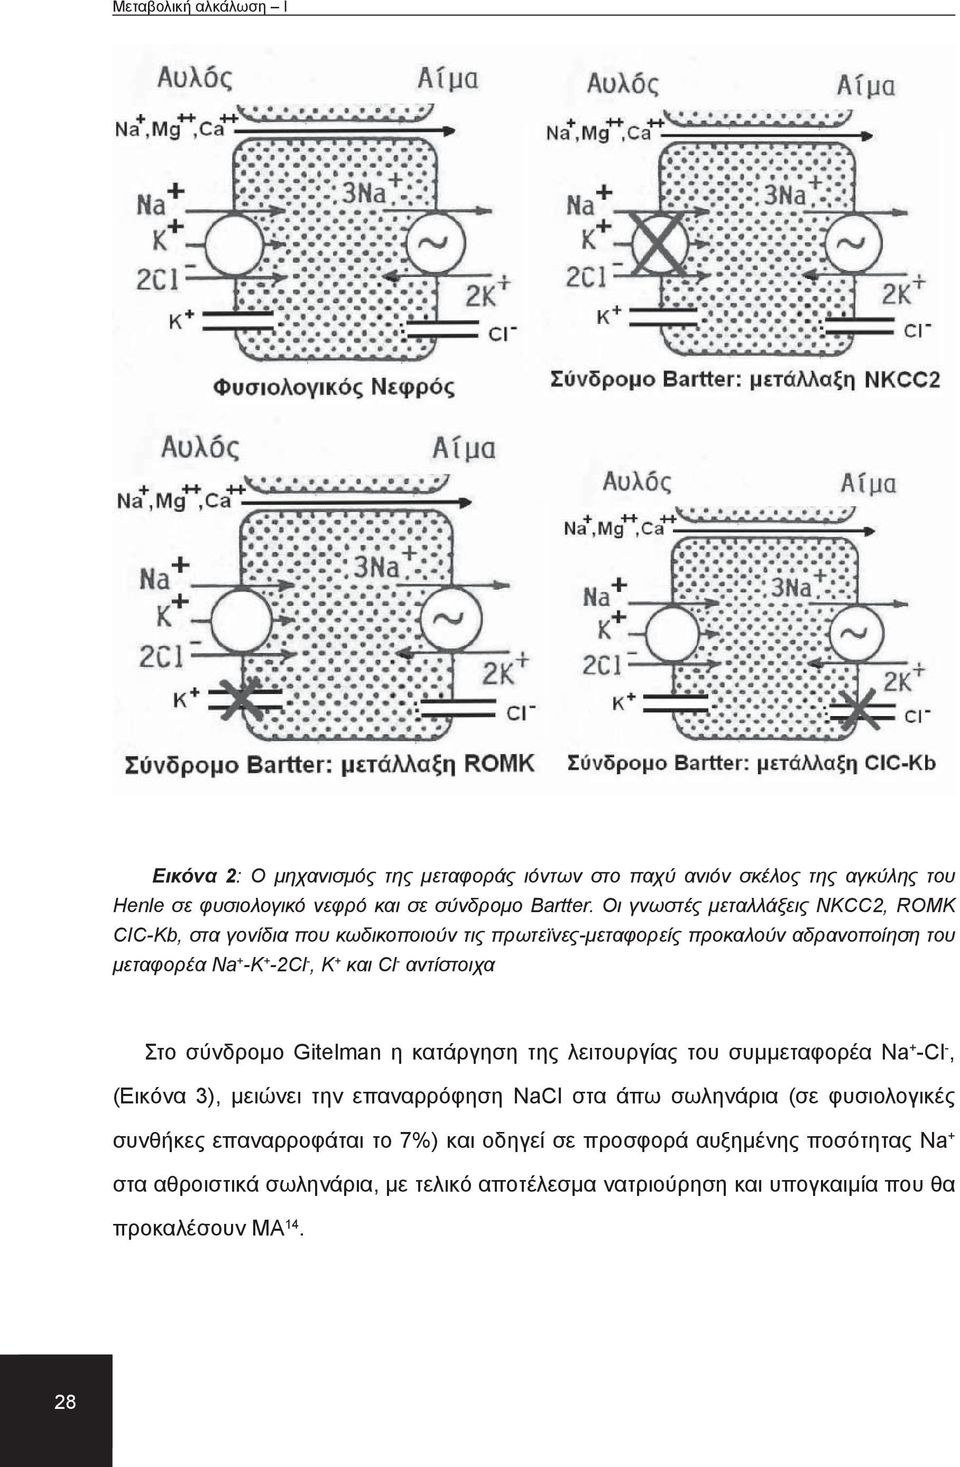 αντίστοιχα Στο σύνδρομο Gitelman η κατάργηση της λειτουργίας του συμμεταφορέα Na + Cl, (Εικόνα 3), μειώνει την επαναρρόφηση NaCl στα άπω σωληνάρια (σε